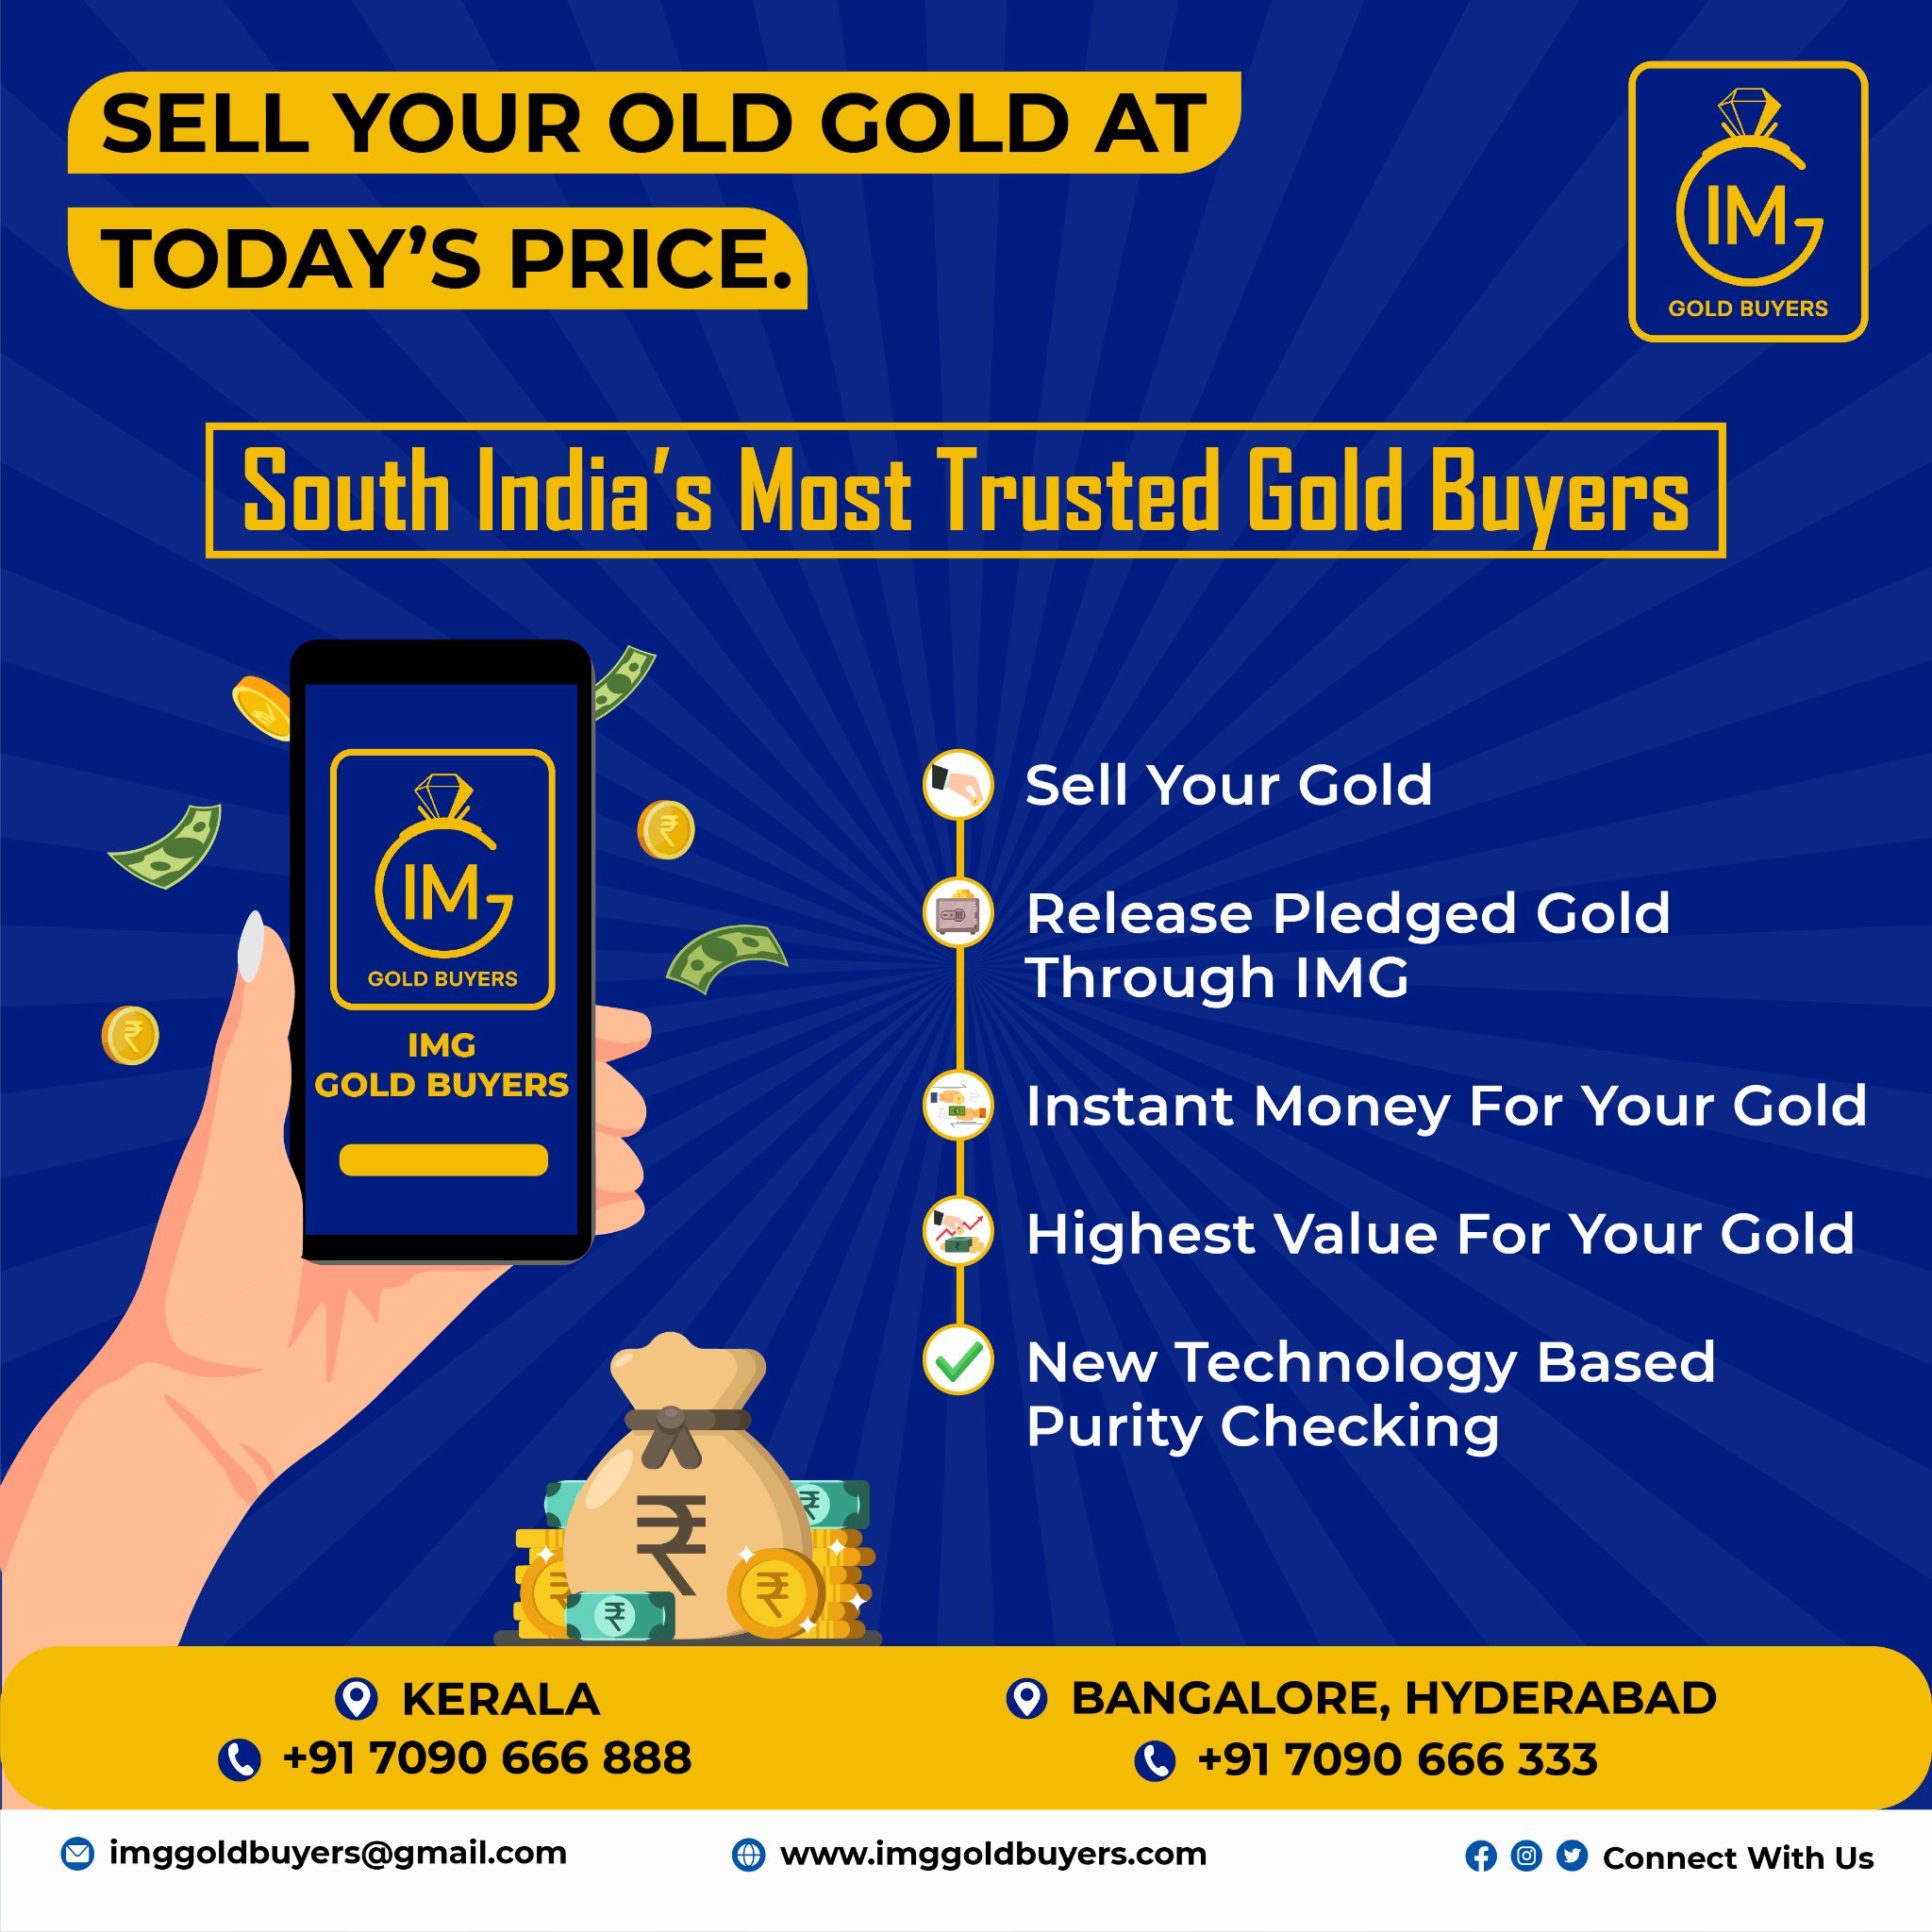 Gold Buyers in Kerala